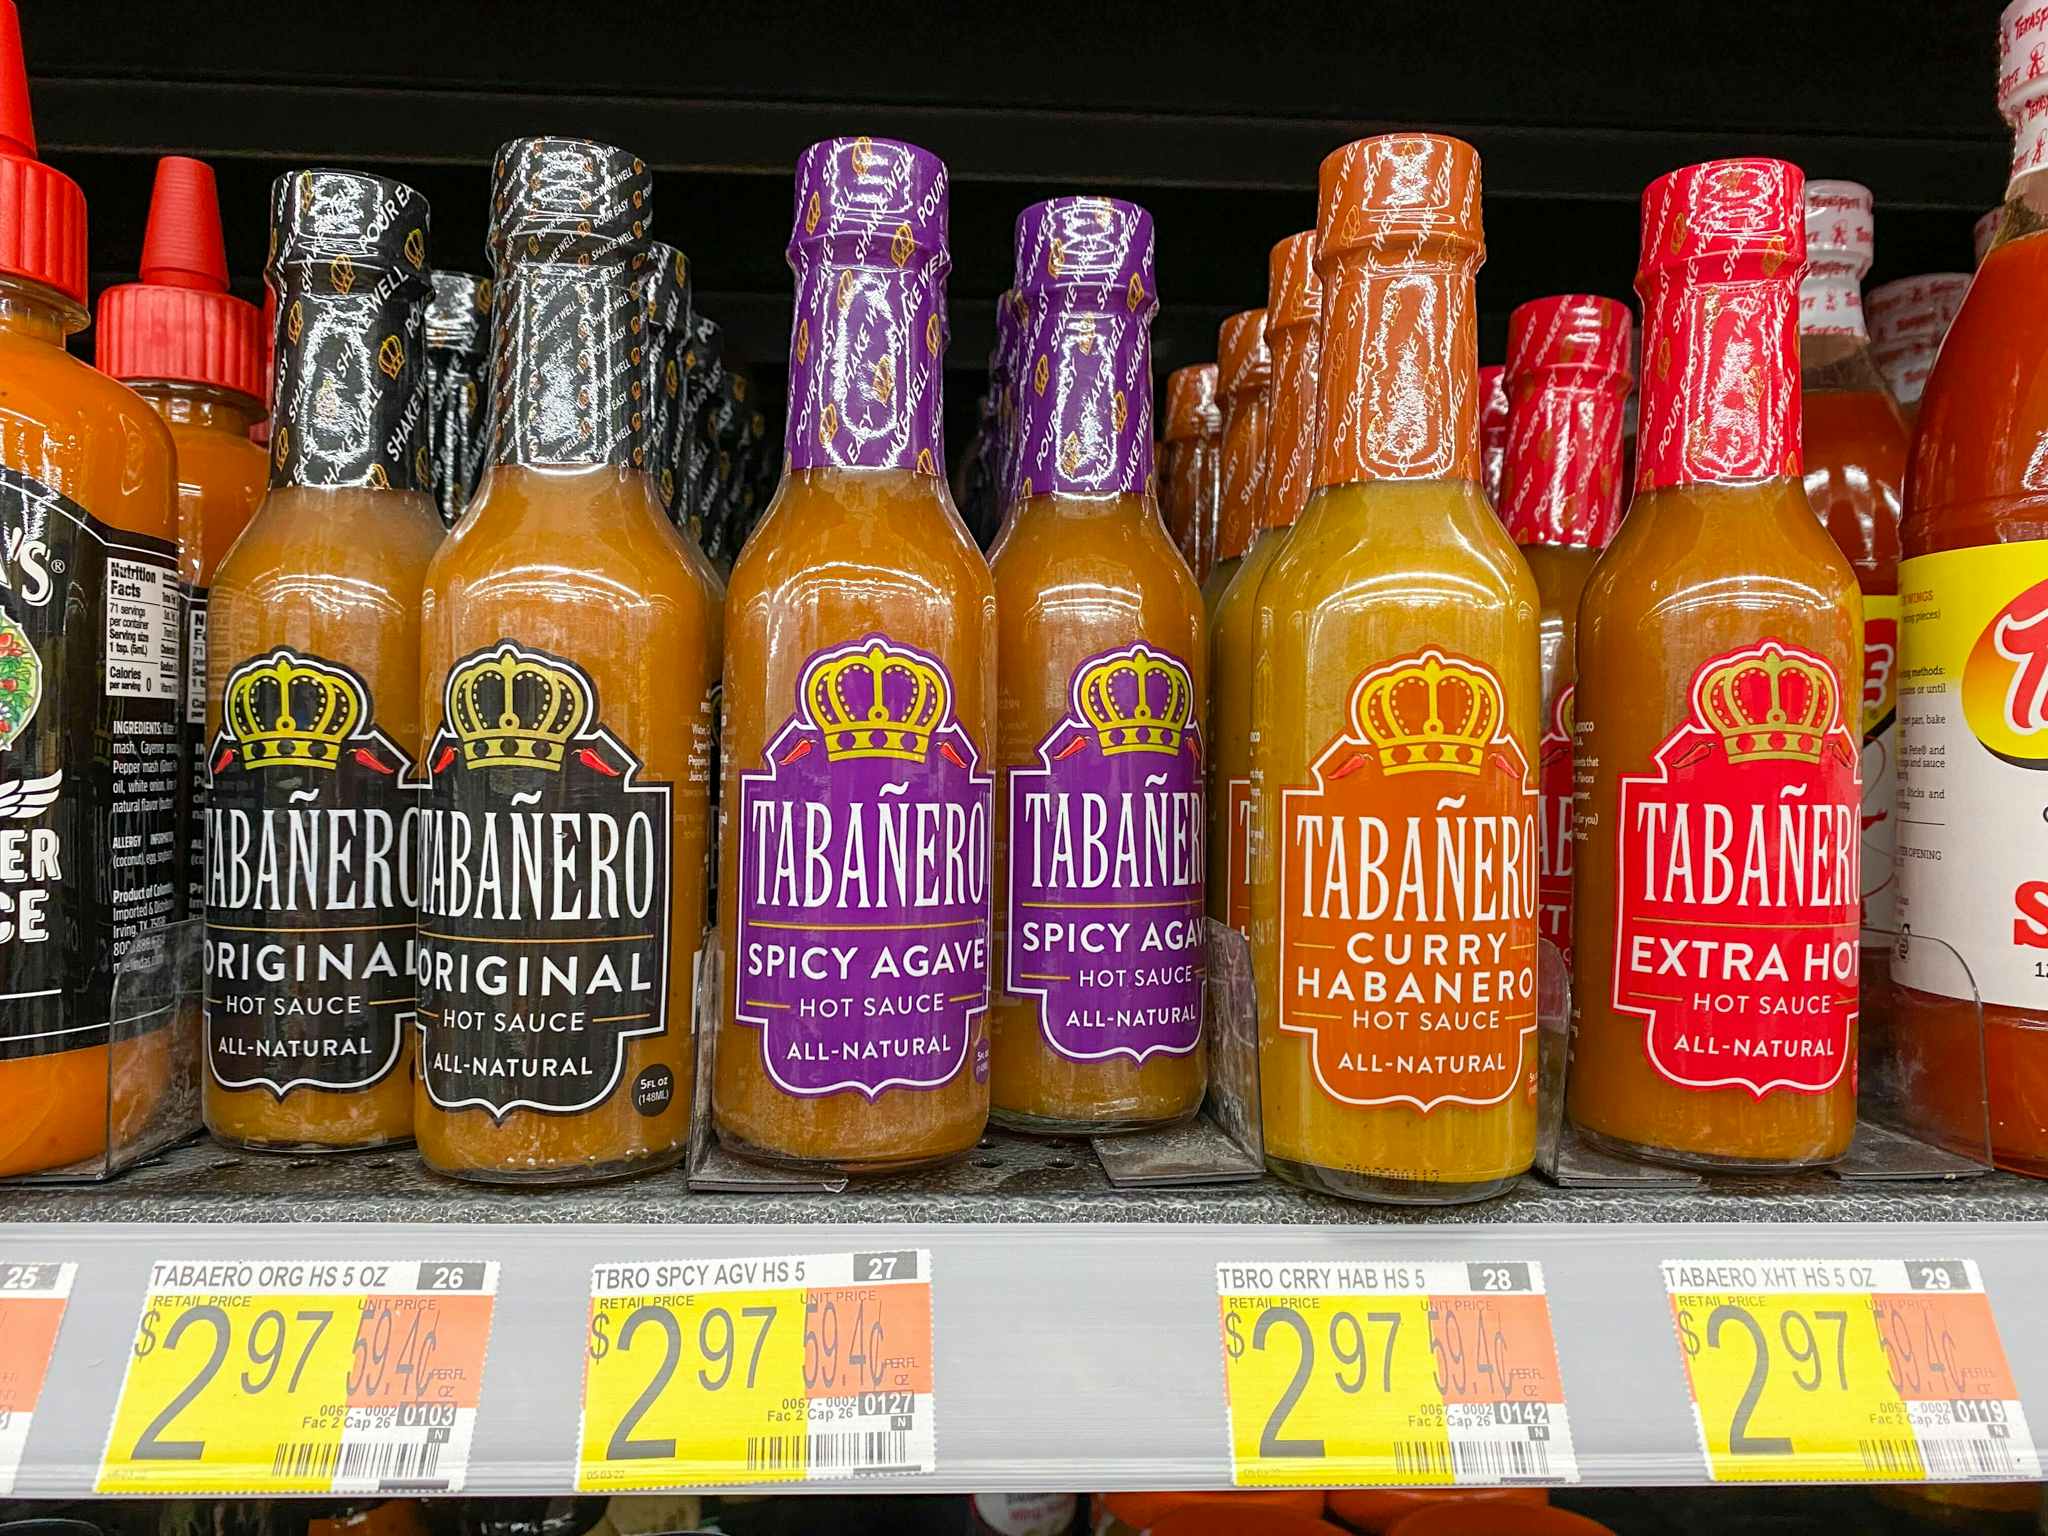 tabanero hot sauce on walmart shelf